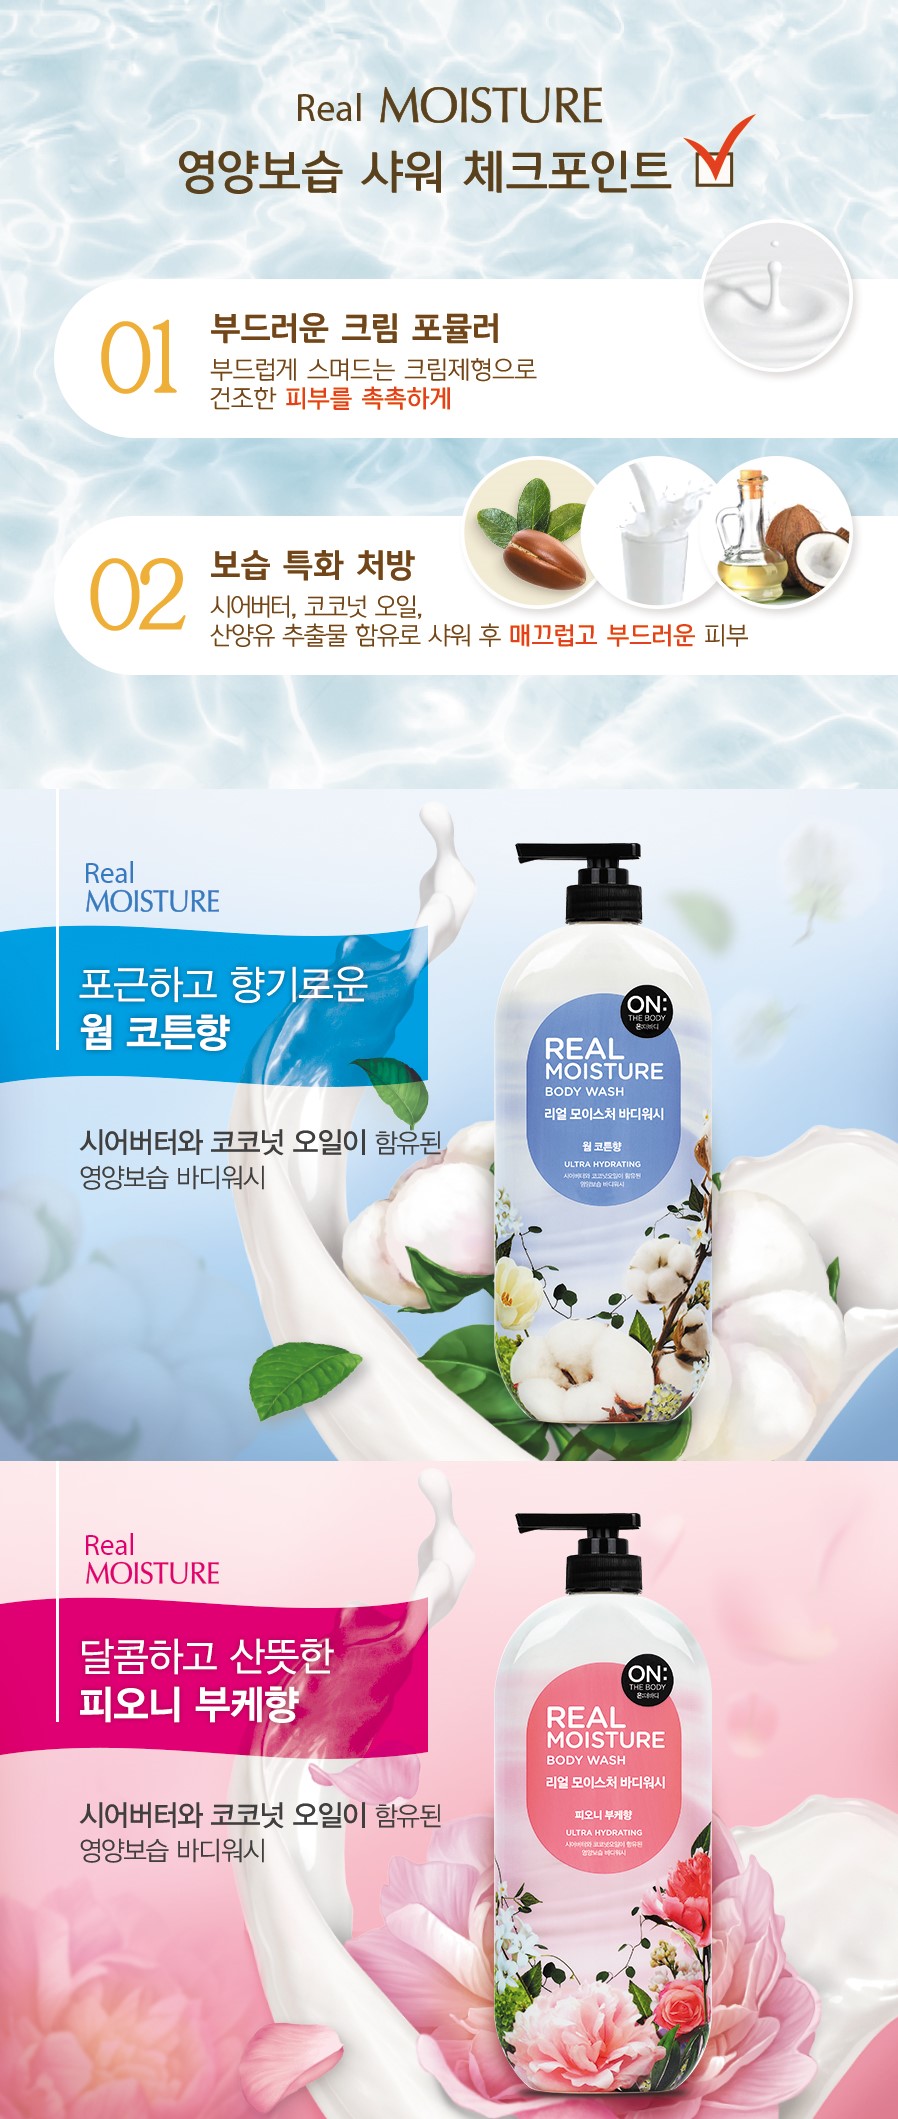 韓國食品-[ON:THE BODY] Real Moisture Warm Cotton Body Wash 900g